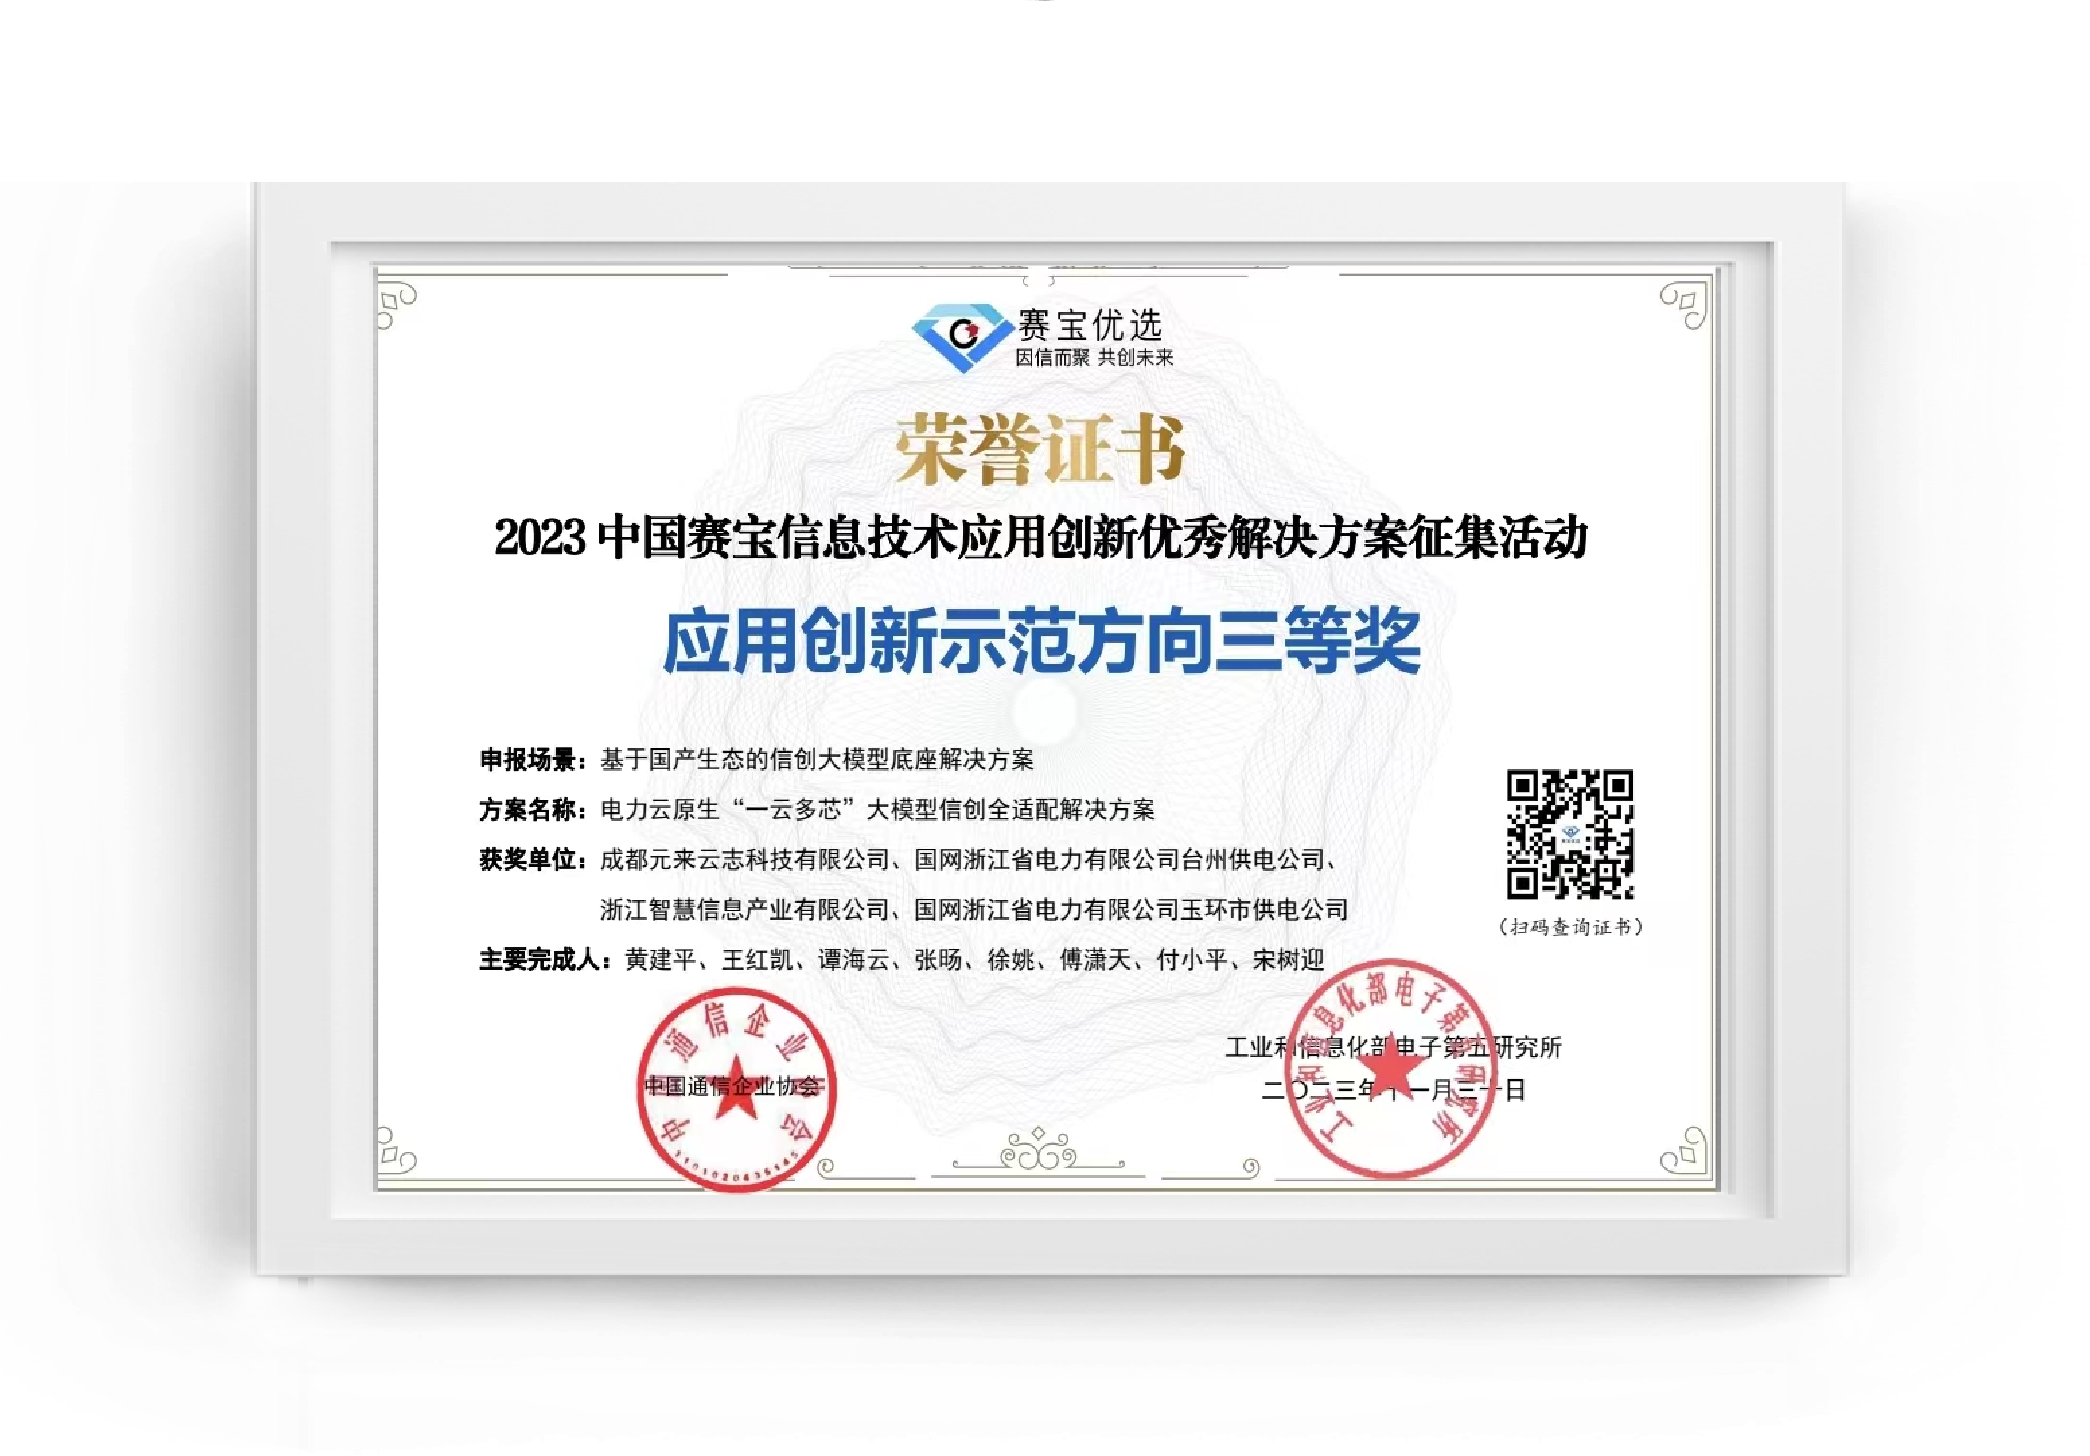 2023中国赛宝信息技术应用创新优秀解决方案征集活动-应用创新示范方向三等奖